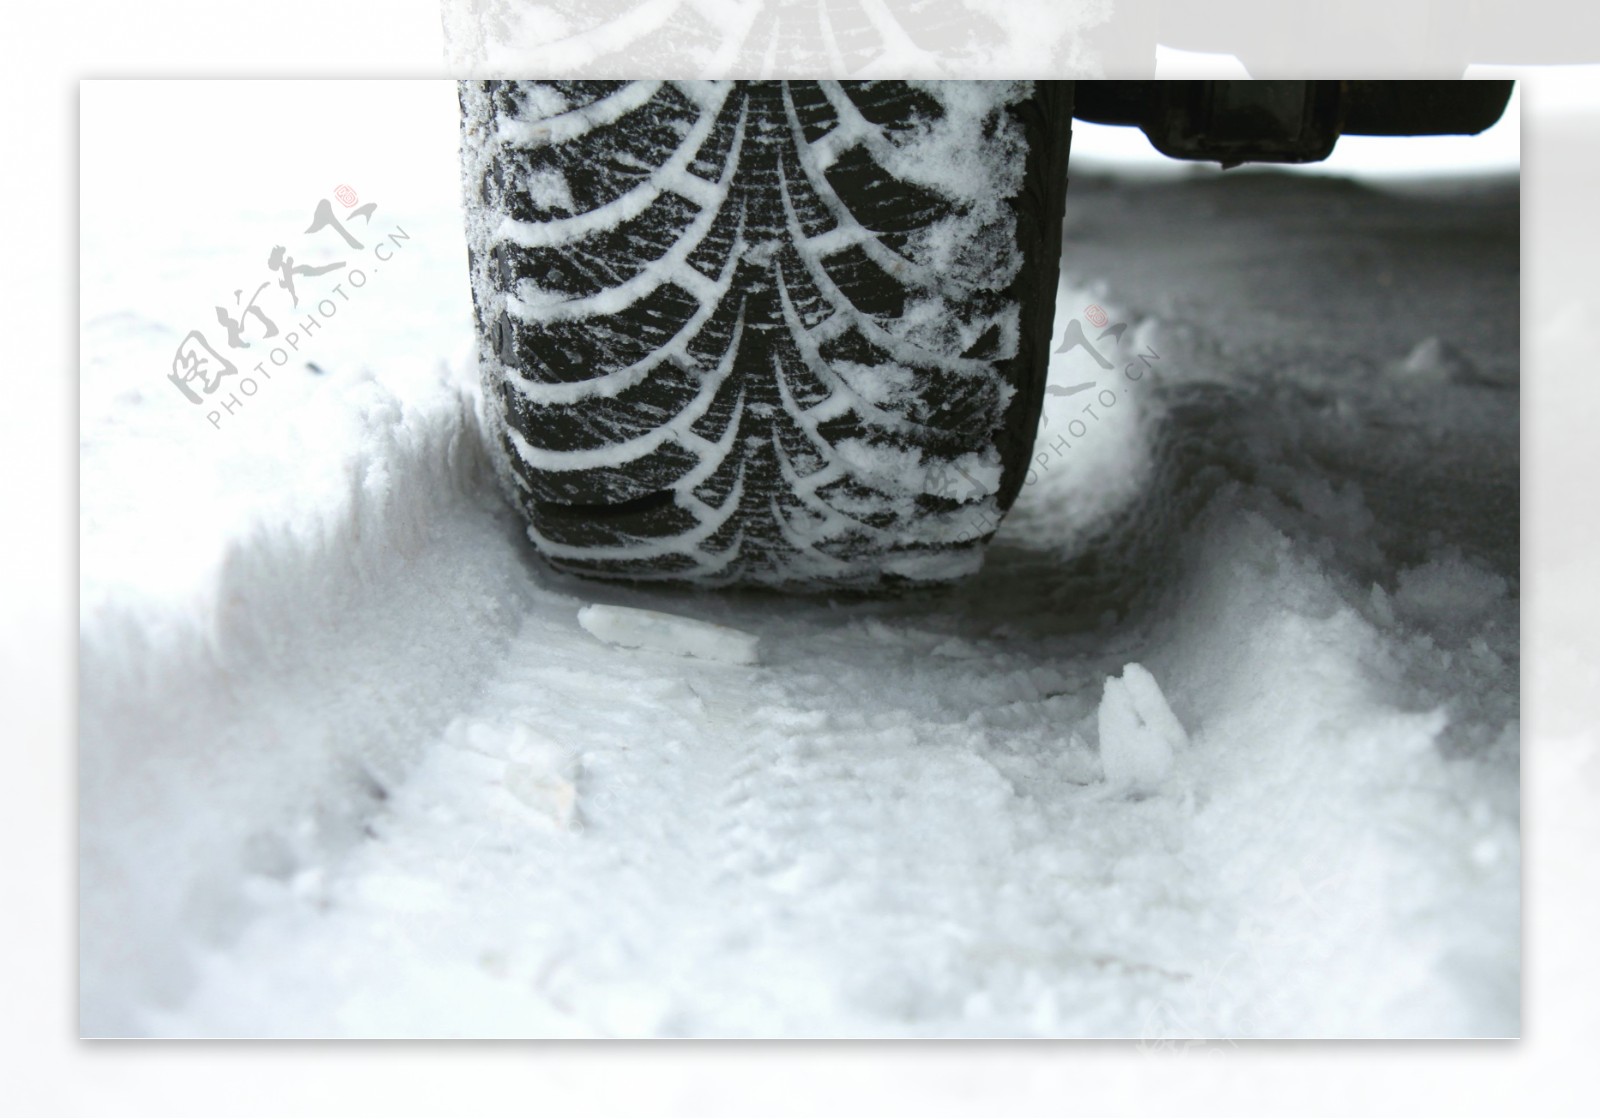 行驶在堆满雪的马路上的车图片